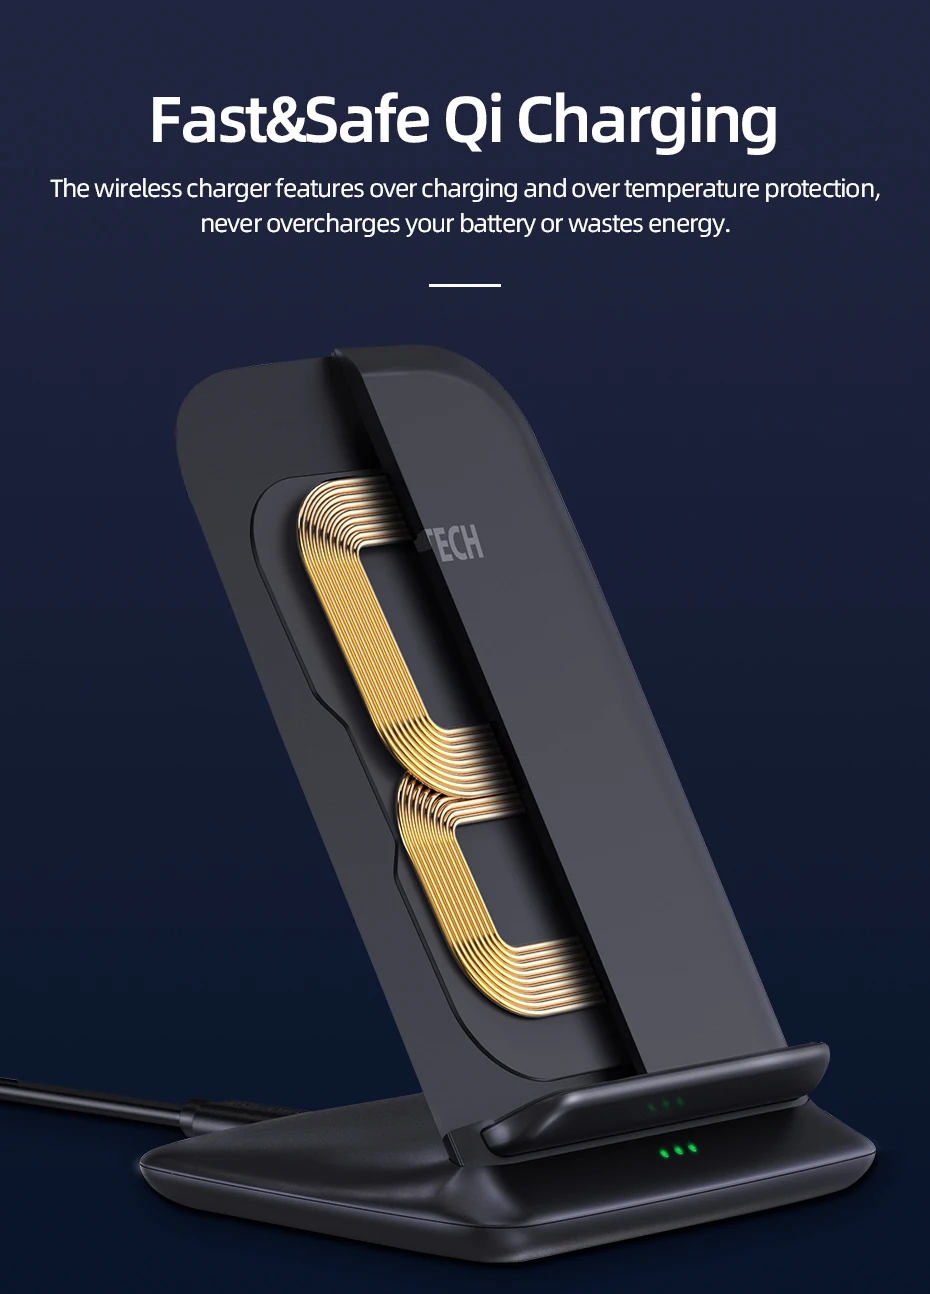 CHOETECH 15 Вт Qi Беспроводное зарядное устройство подставка для iPhone X XS 8 быстрая Беспроводная зарядная станция для samsung S9 зарядное устройство для телефона беспроводная зарядка для айфона быстрая зарядка для